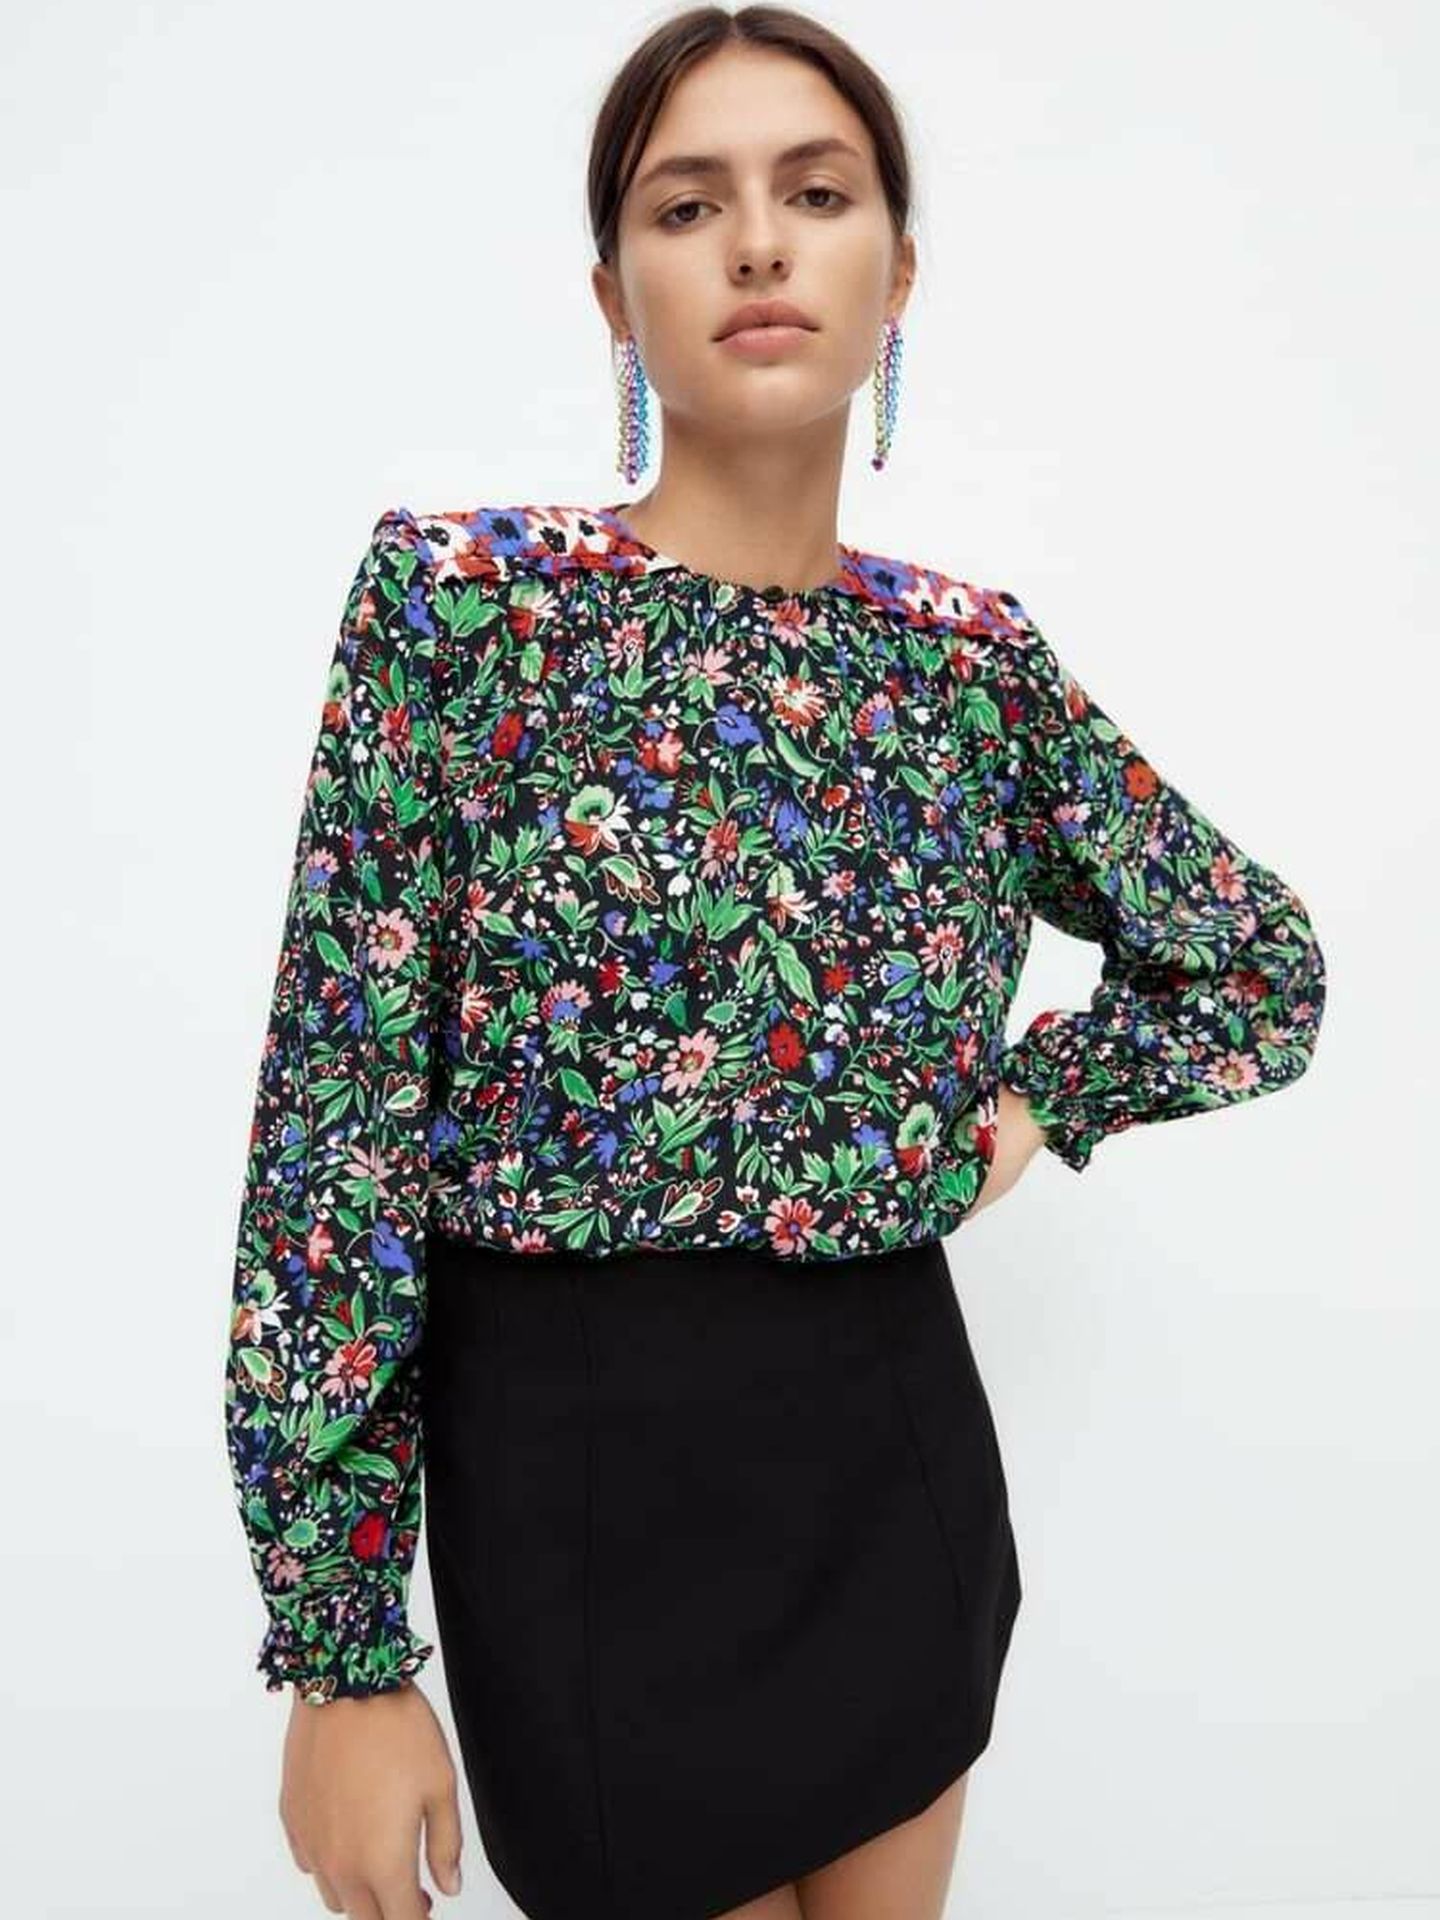 La blusa de flores de Zara. (Cortesía)